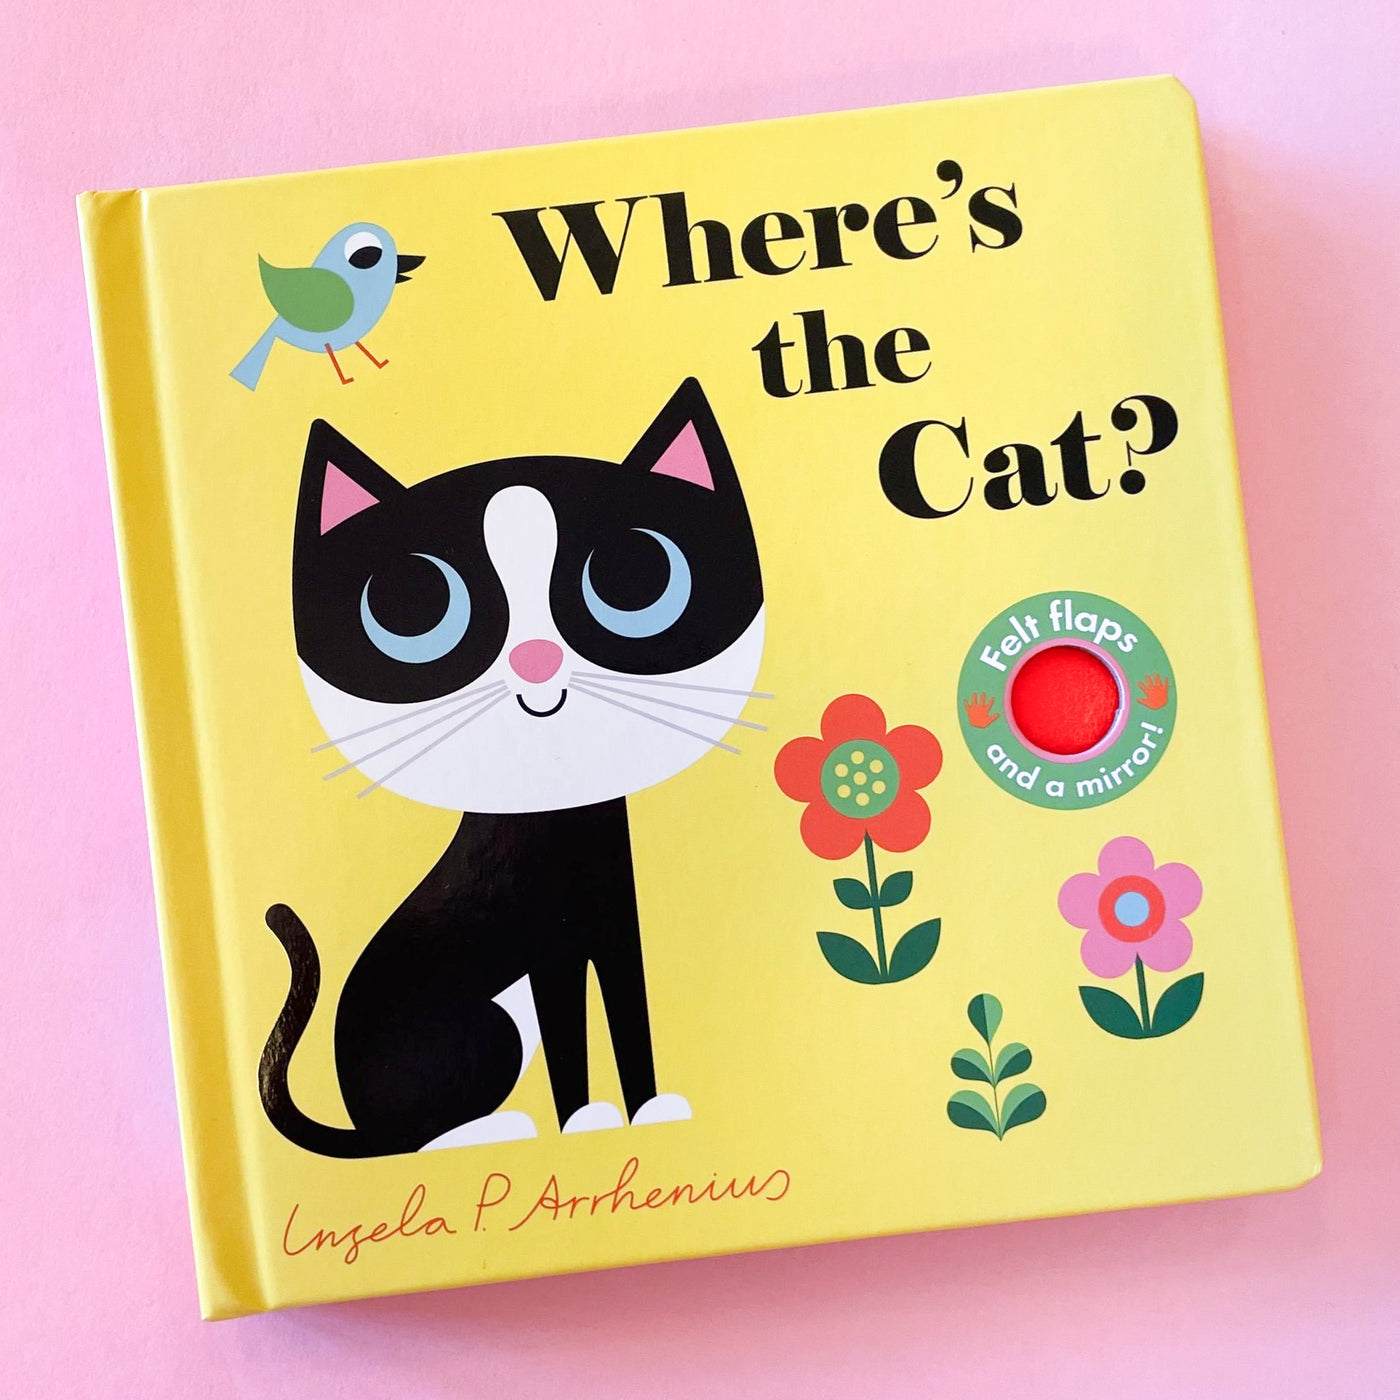 Where's the Cat? by Ingela P Arrhenius